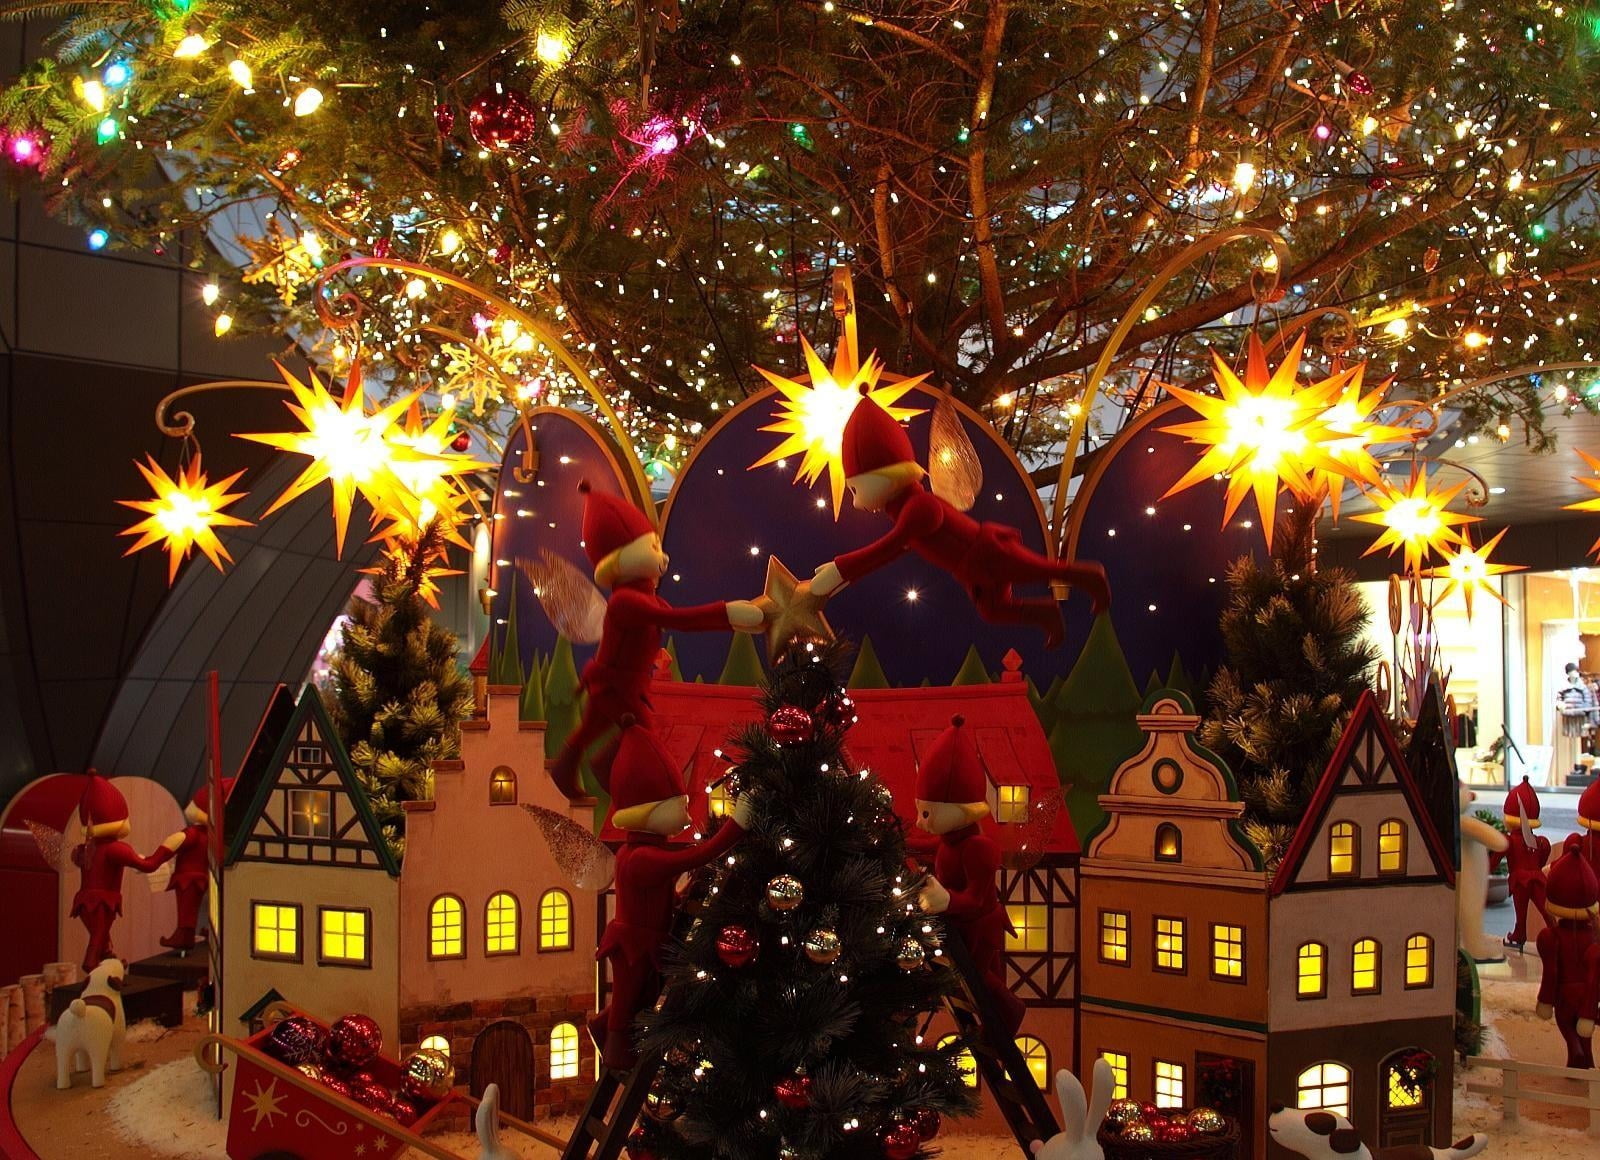 lighted Christmas Village miniature